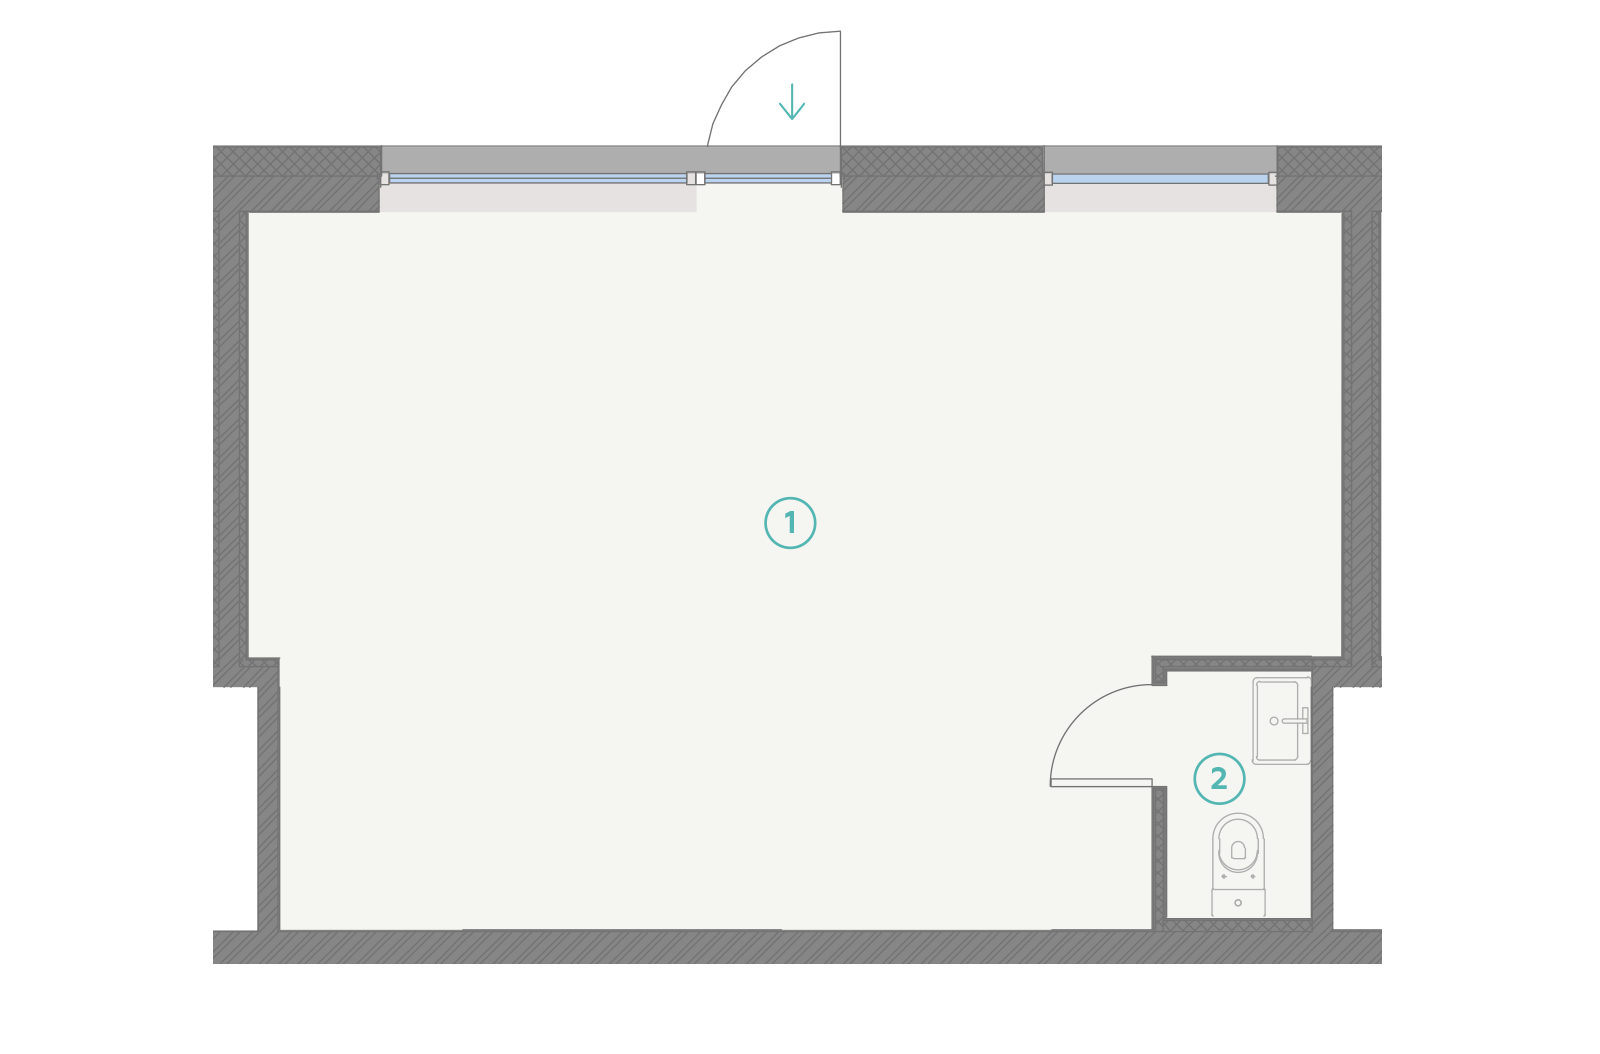 S4B Floorplan